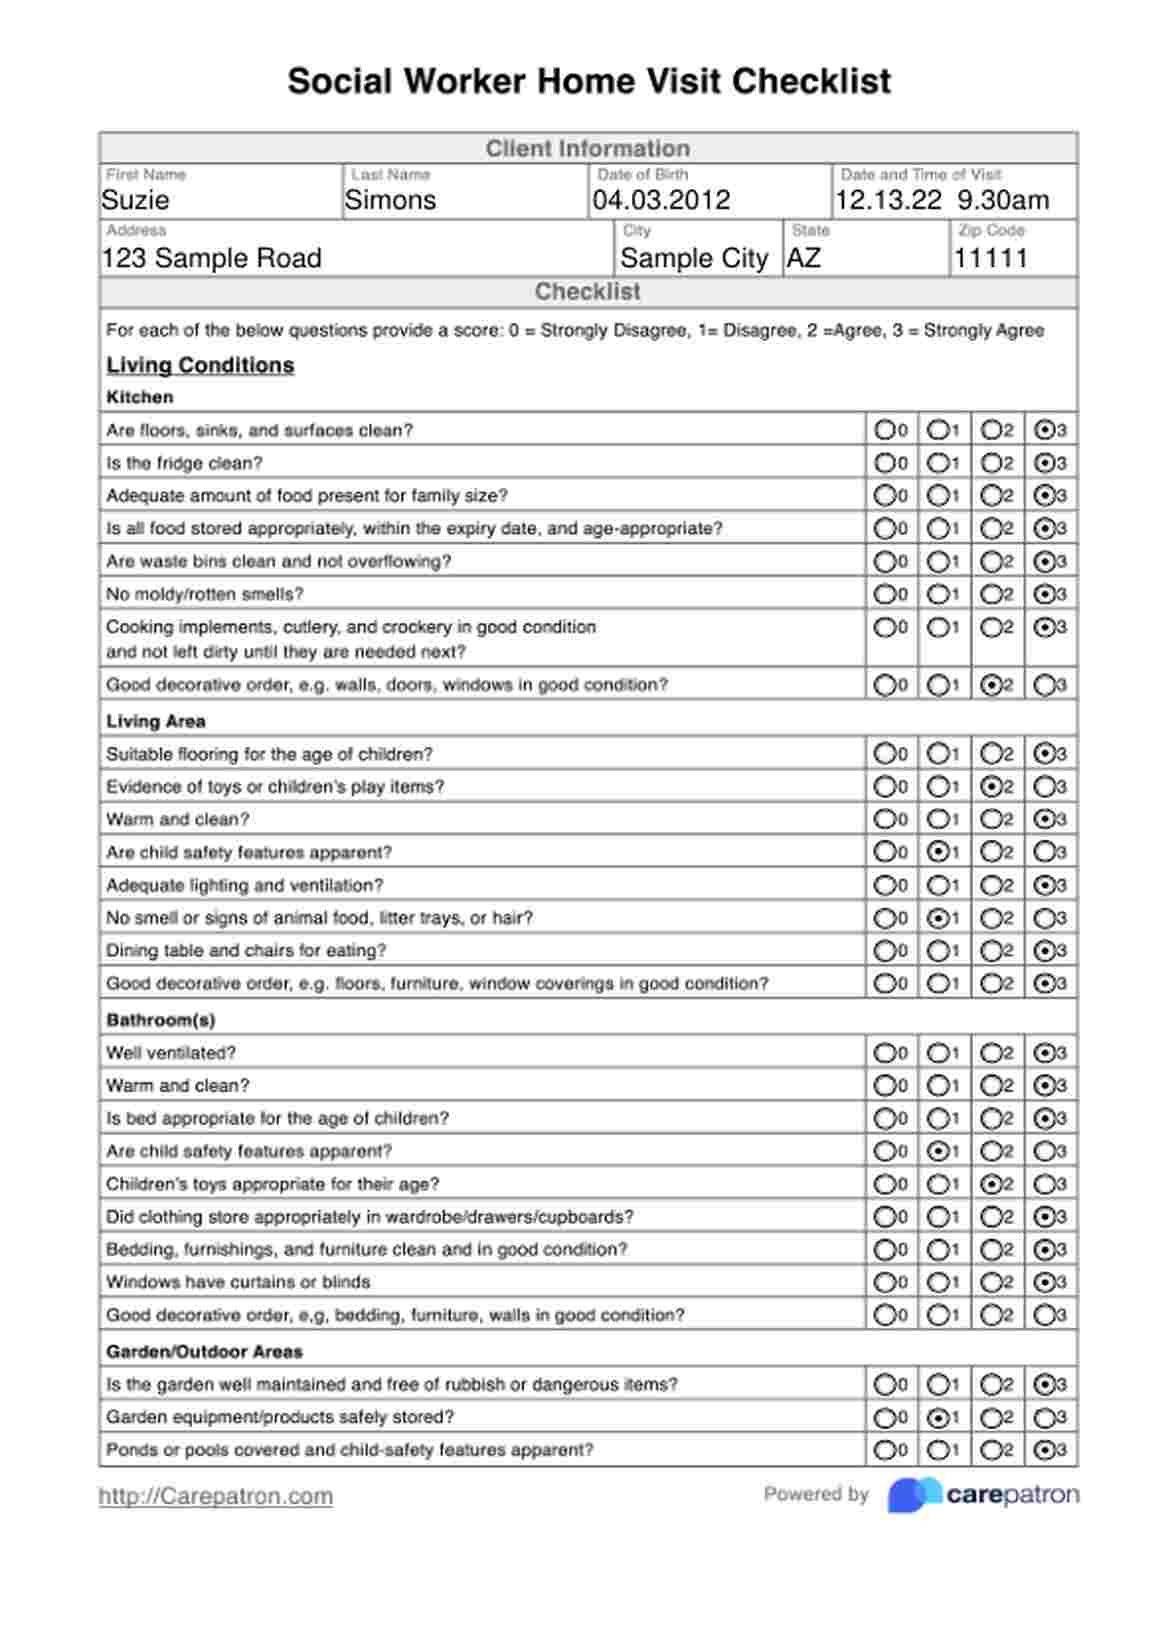 Checklist de Visita a domicilio de un trabajador social PDF Example